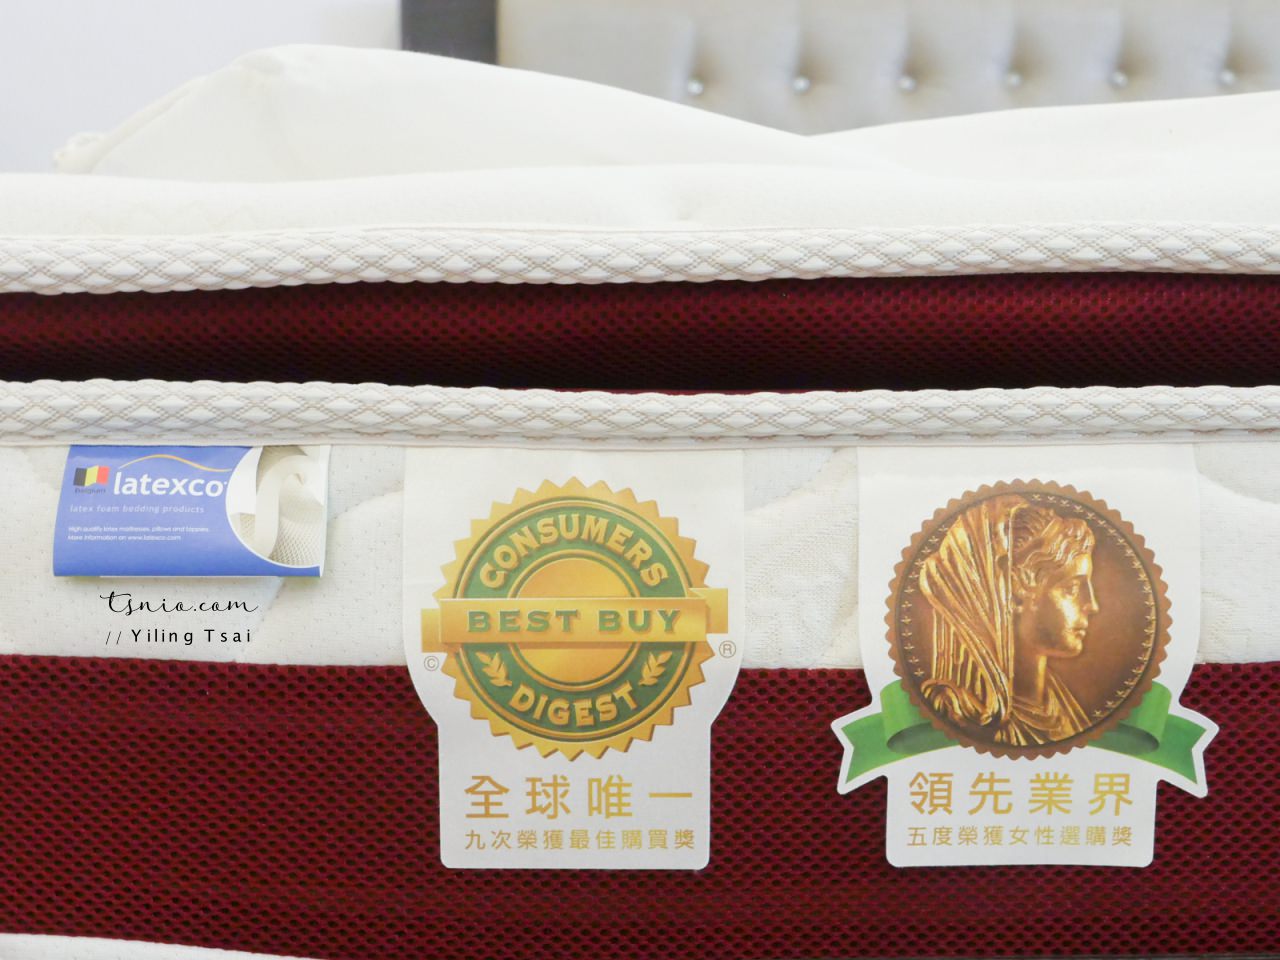 美國蕾絲床墊 Restonic 五星級飯店指定使用床墊品牌